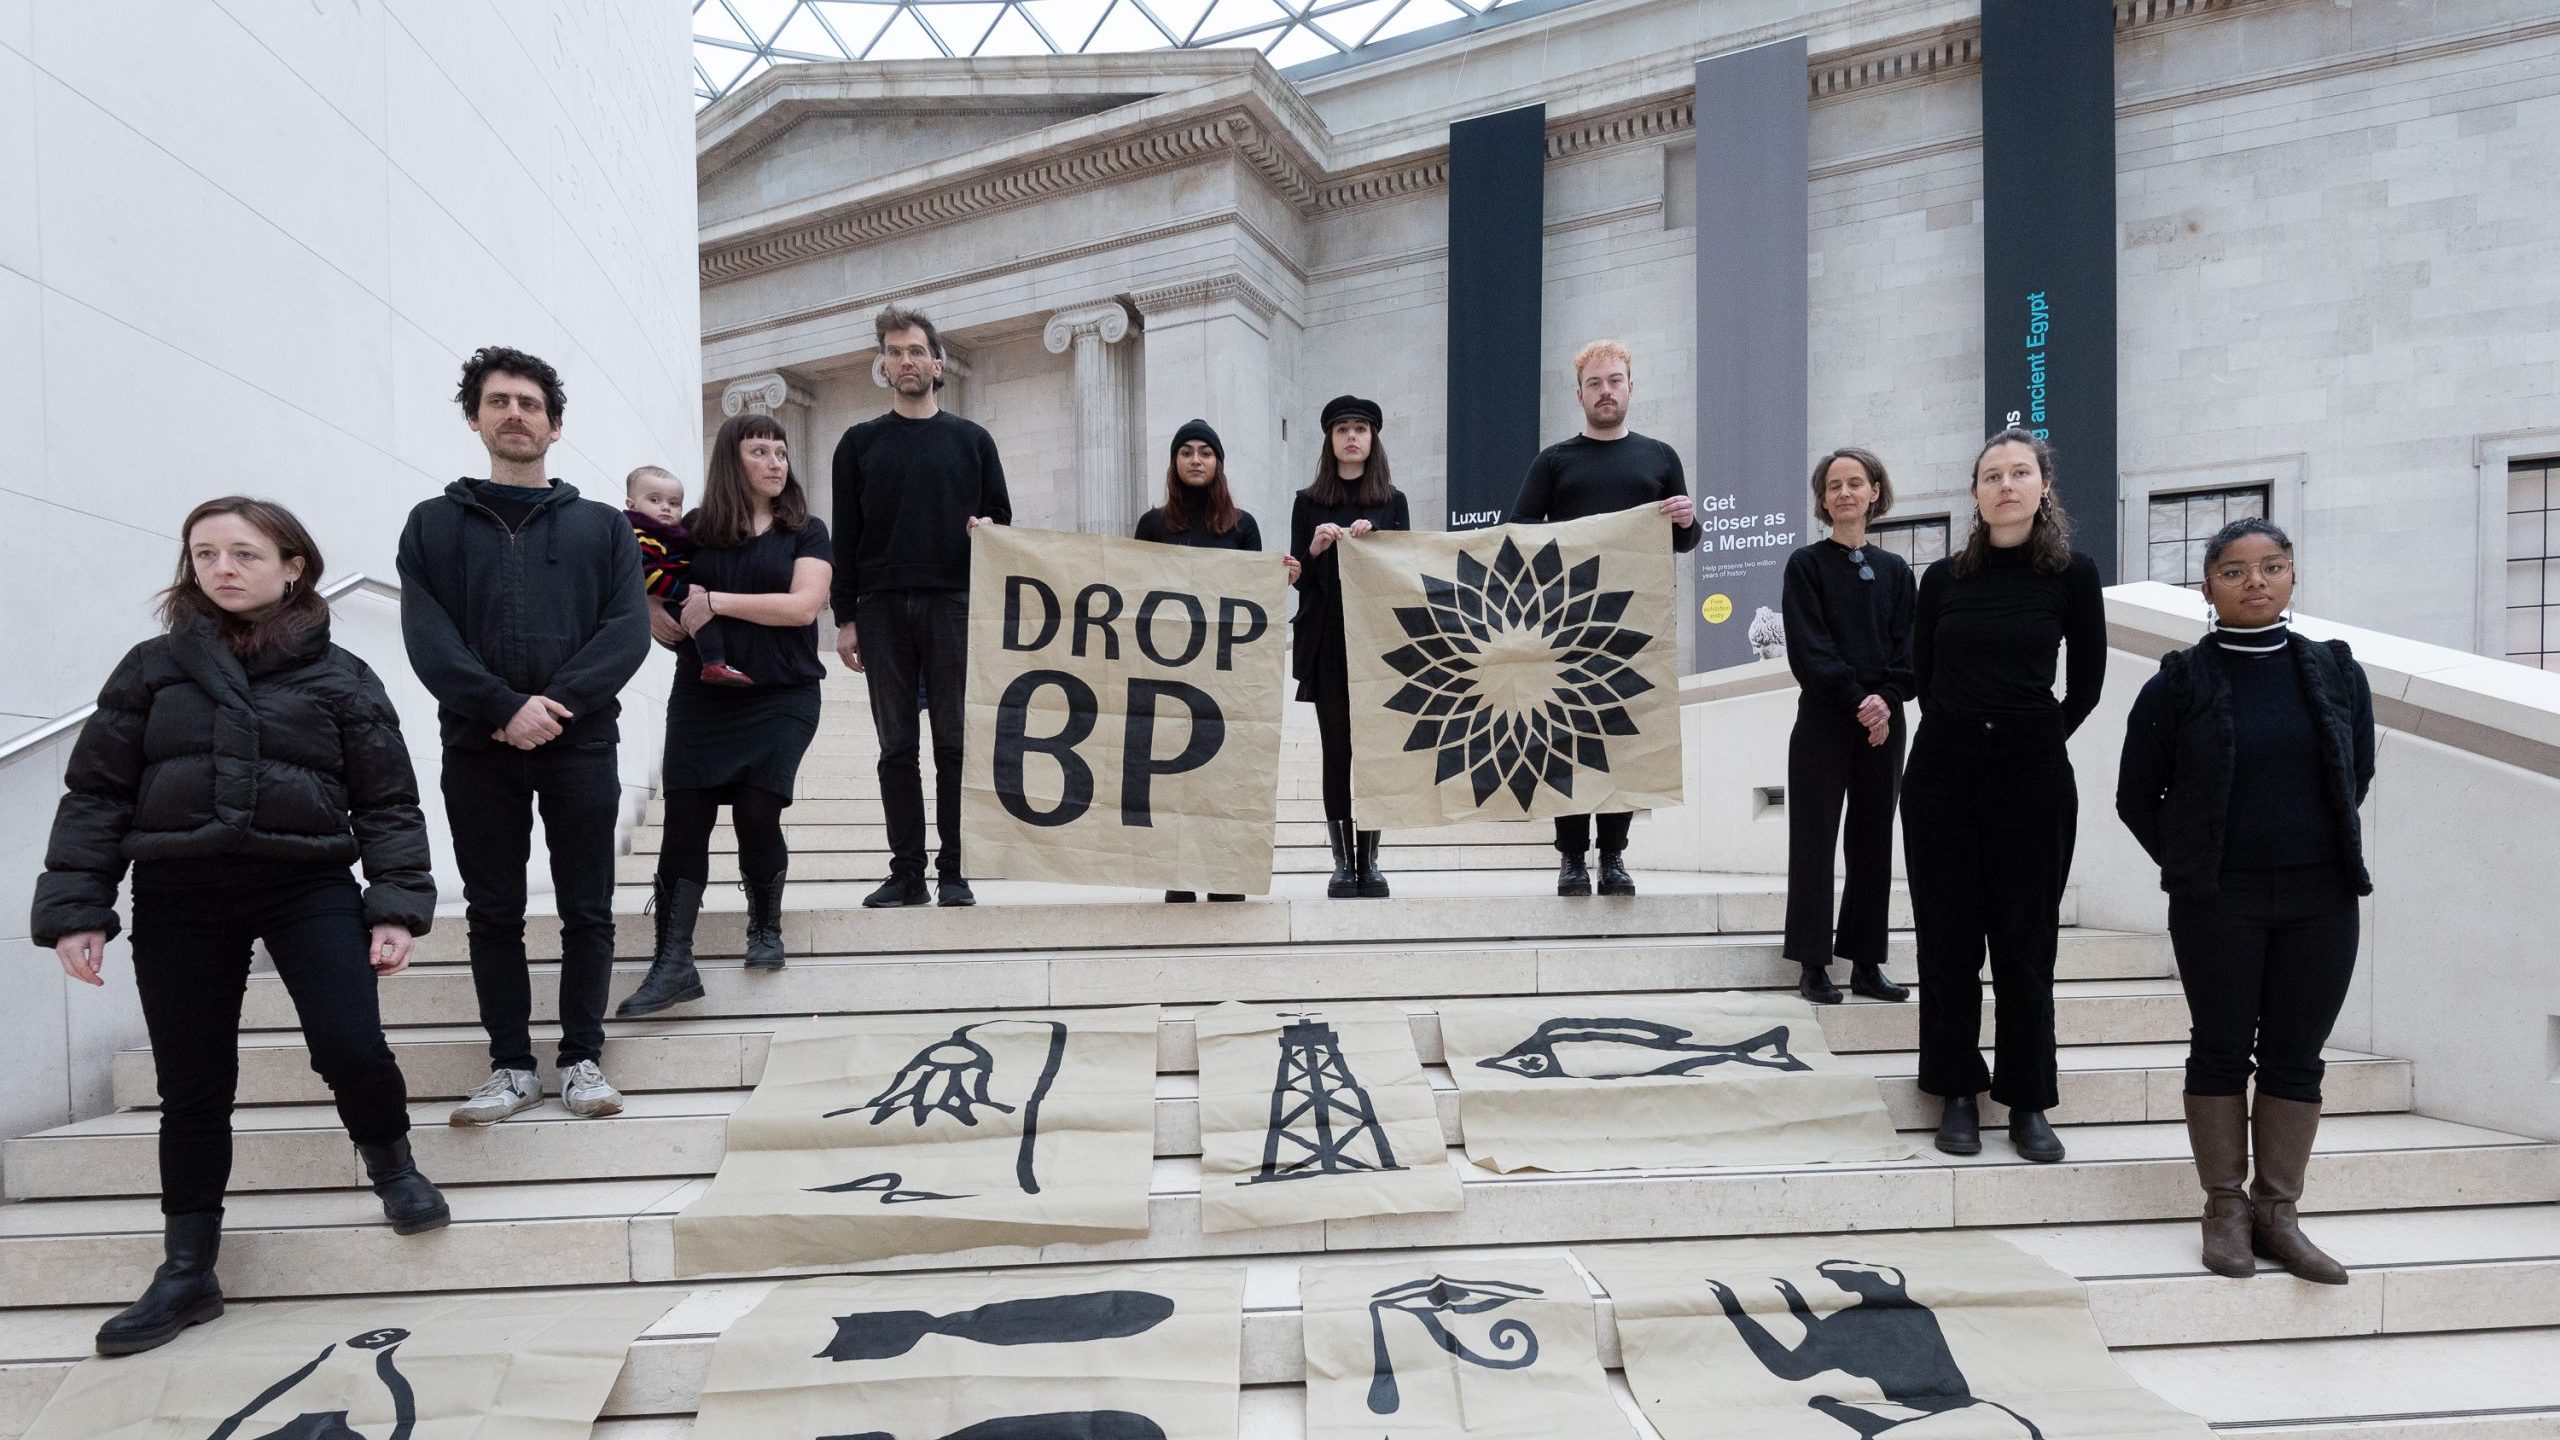 Il British Museum interrompe la partnership con la multinazionale petrolifera British Petroleum dopo 27 anni